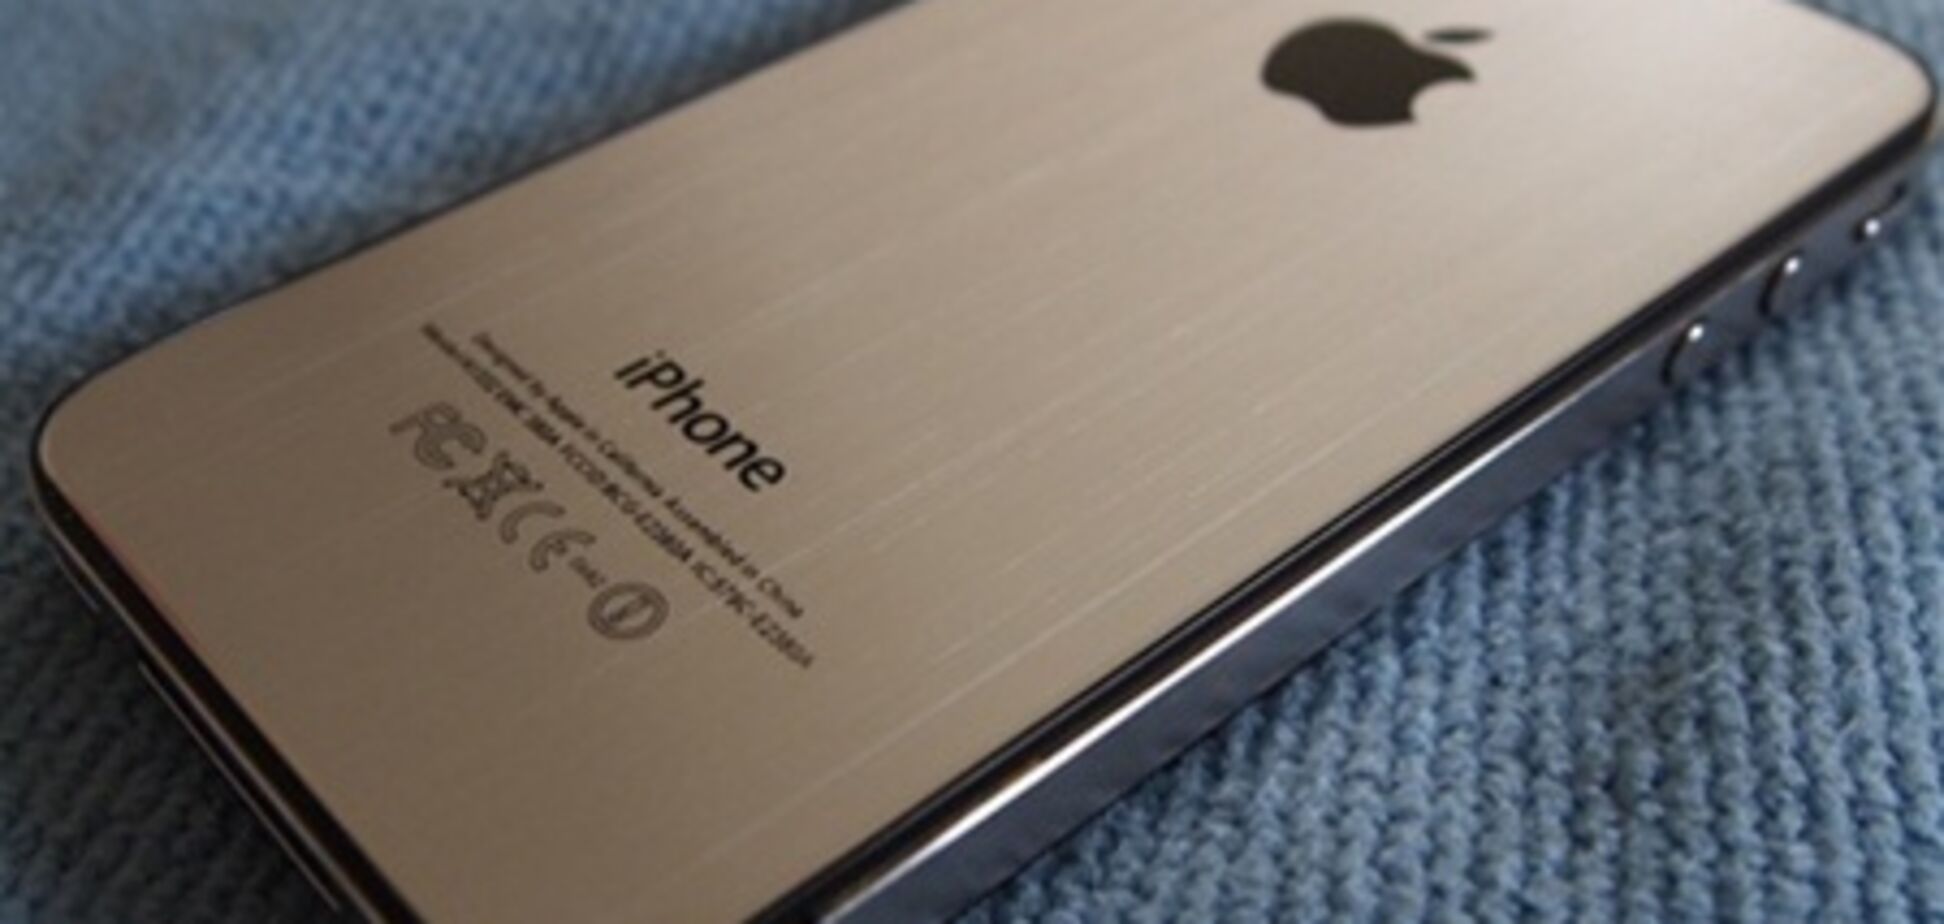 iPhone 5 ожидается уже в июне - новые подробности 